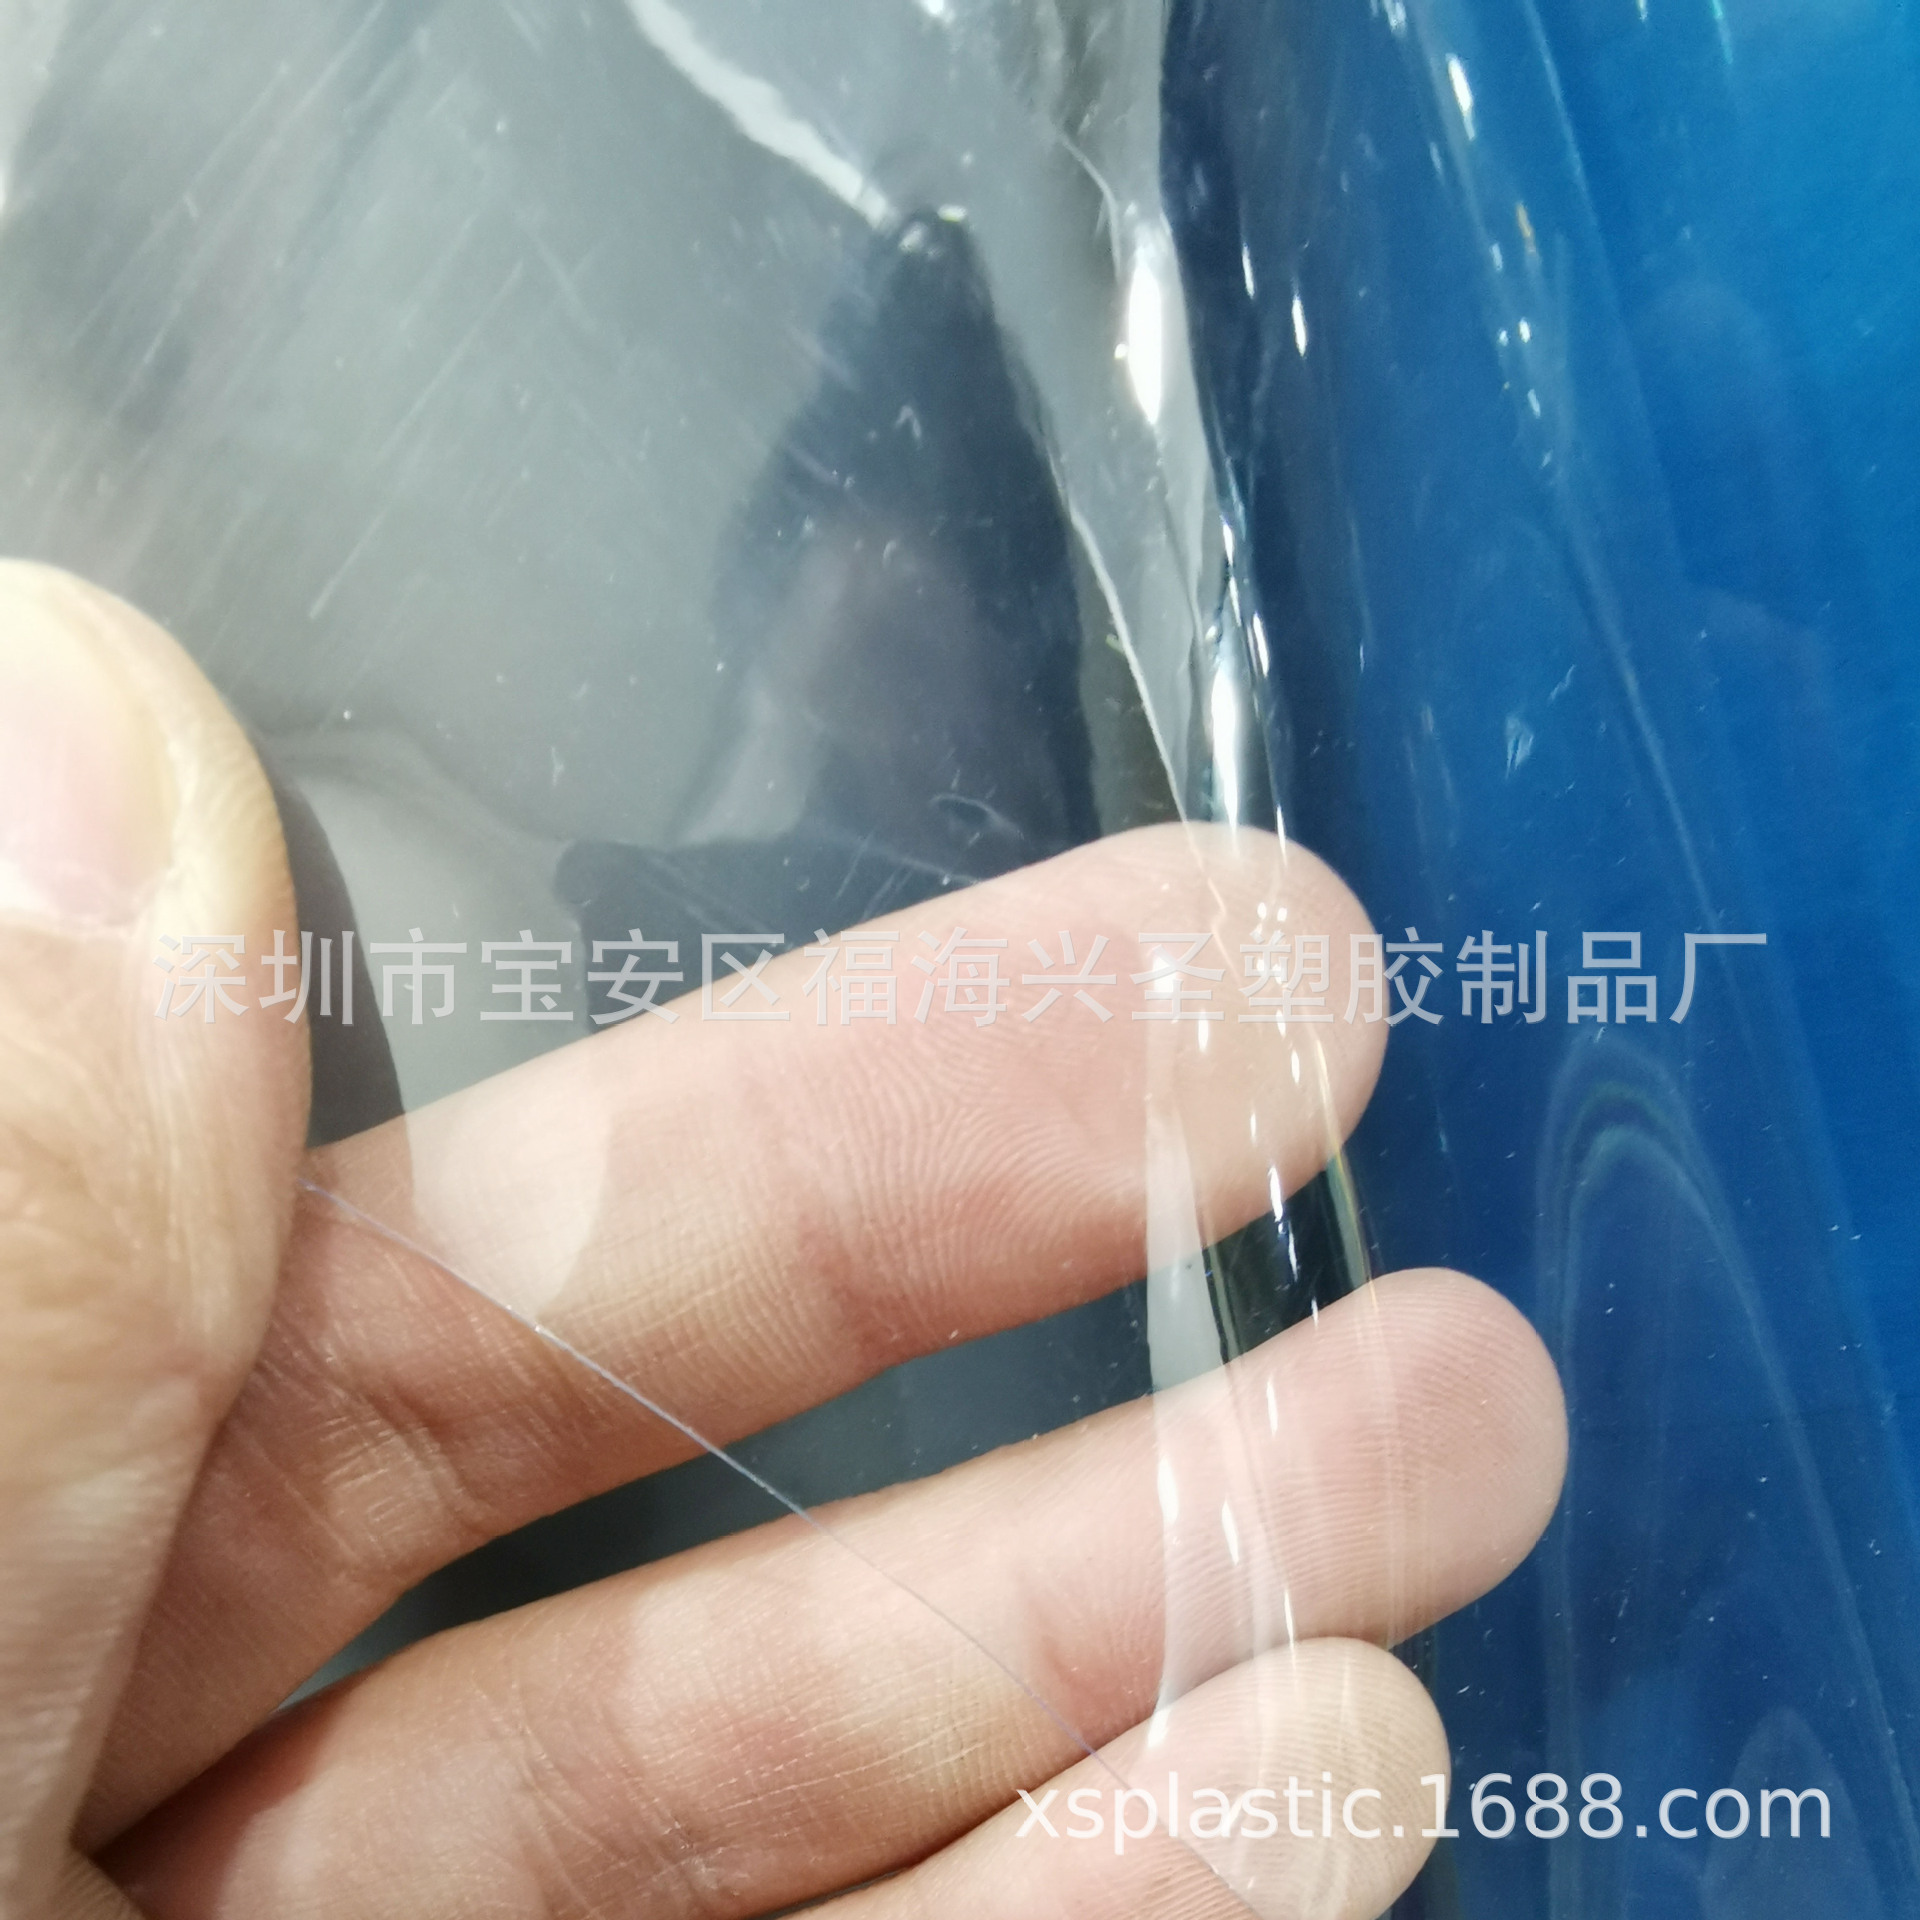 低PVC压延薄膜,毒PVC超透明胶 环保软质包装薄膜 玻璃膜